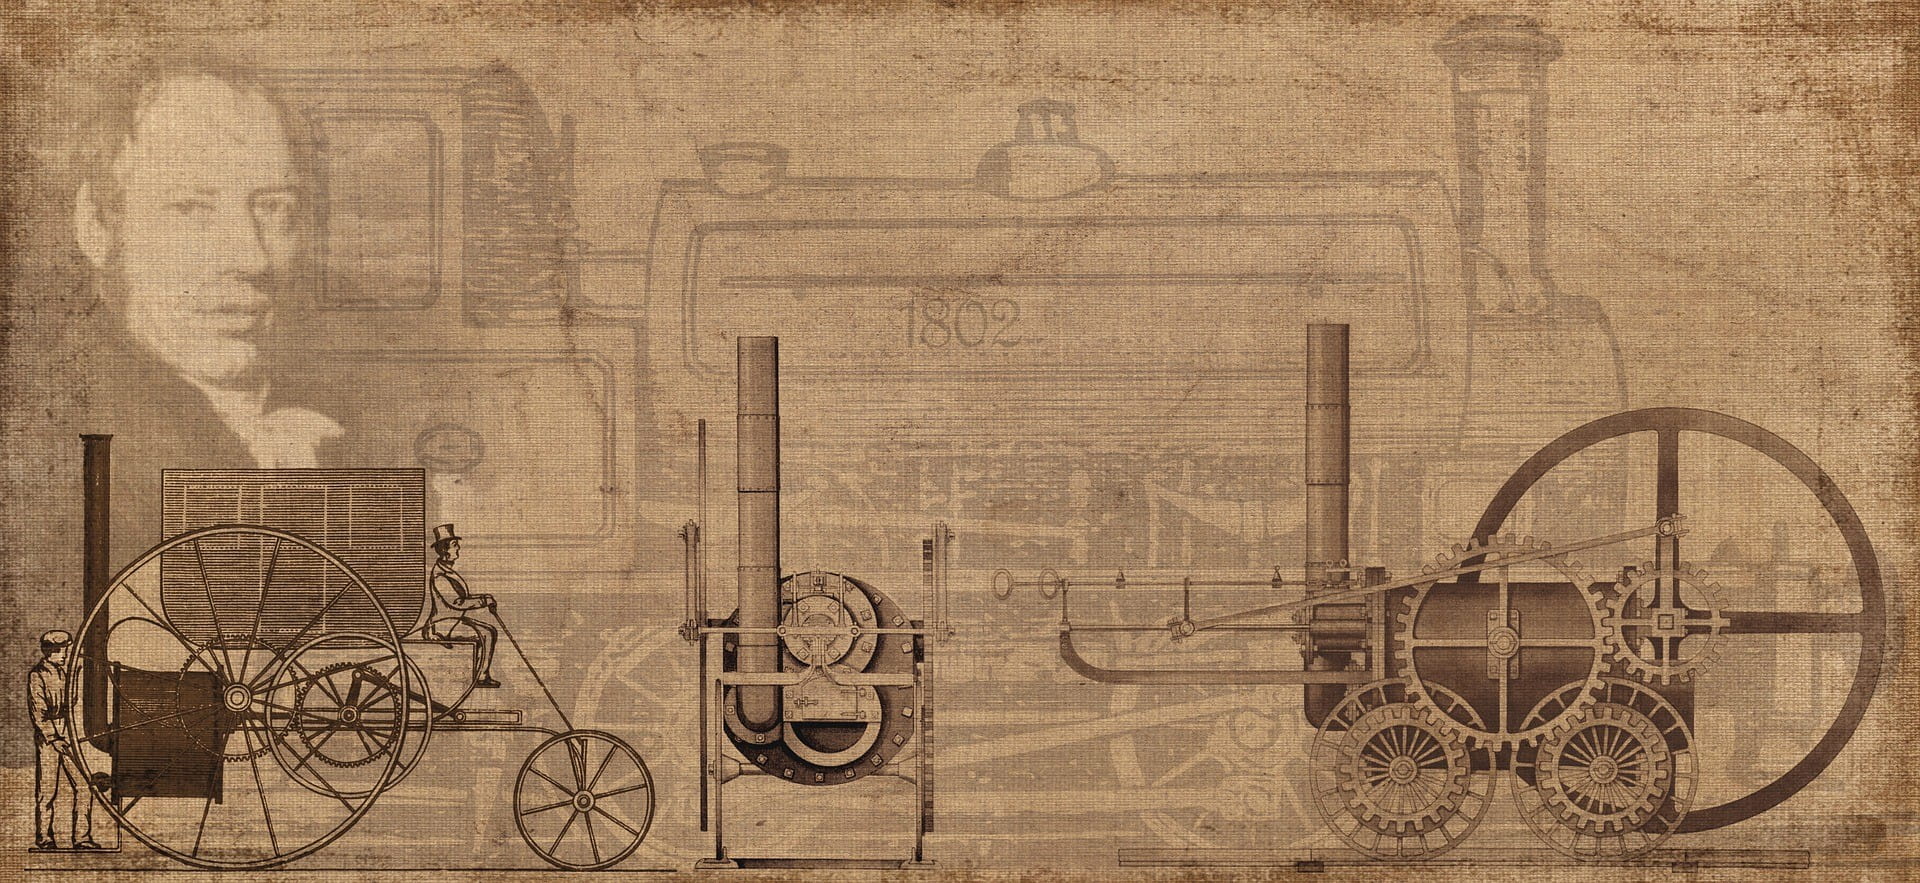 Auf einem alten Bild ist eine Dampfmaschine und ein Mann zu sehen.